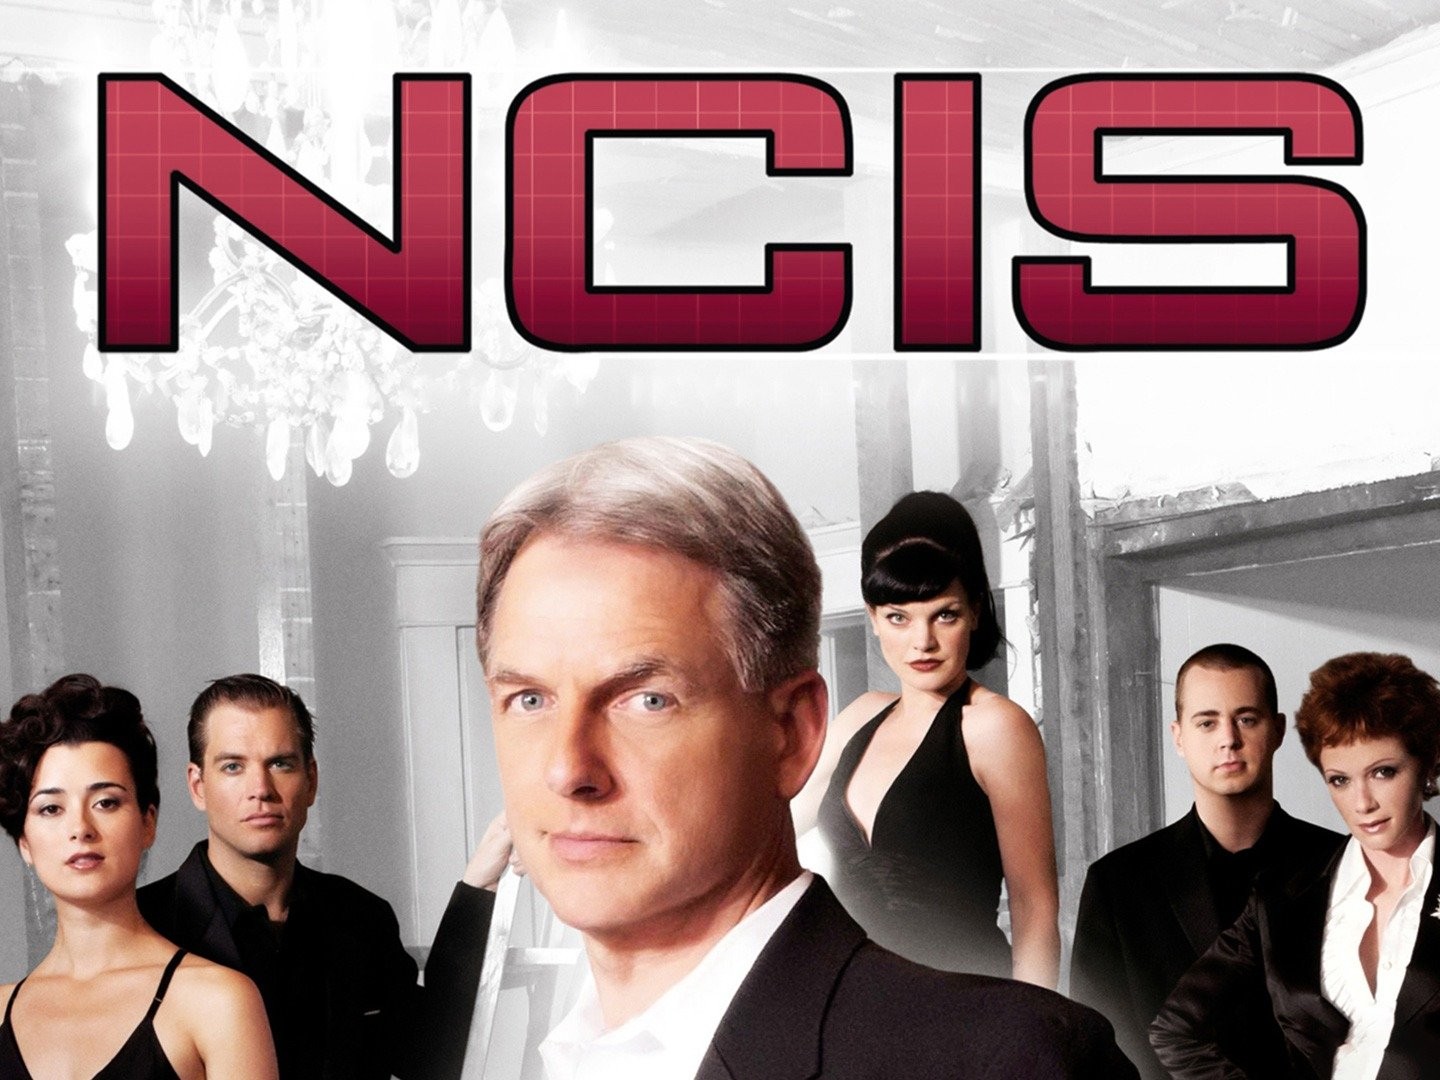 NCIS - Stagione 18 - 5 DVD - Serie TV Completa (DVD)